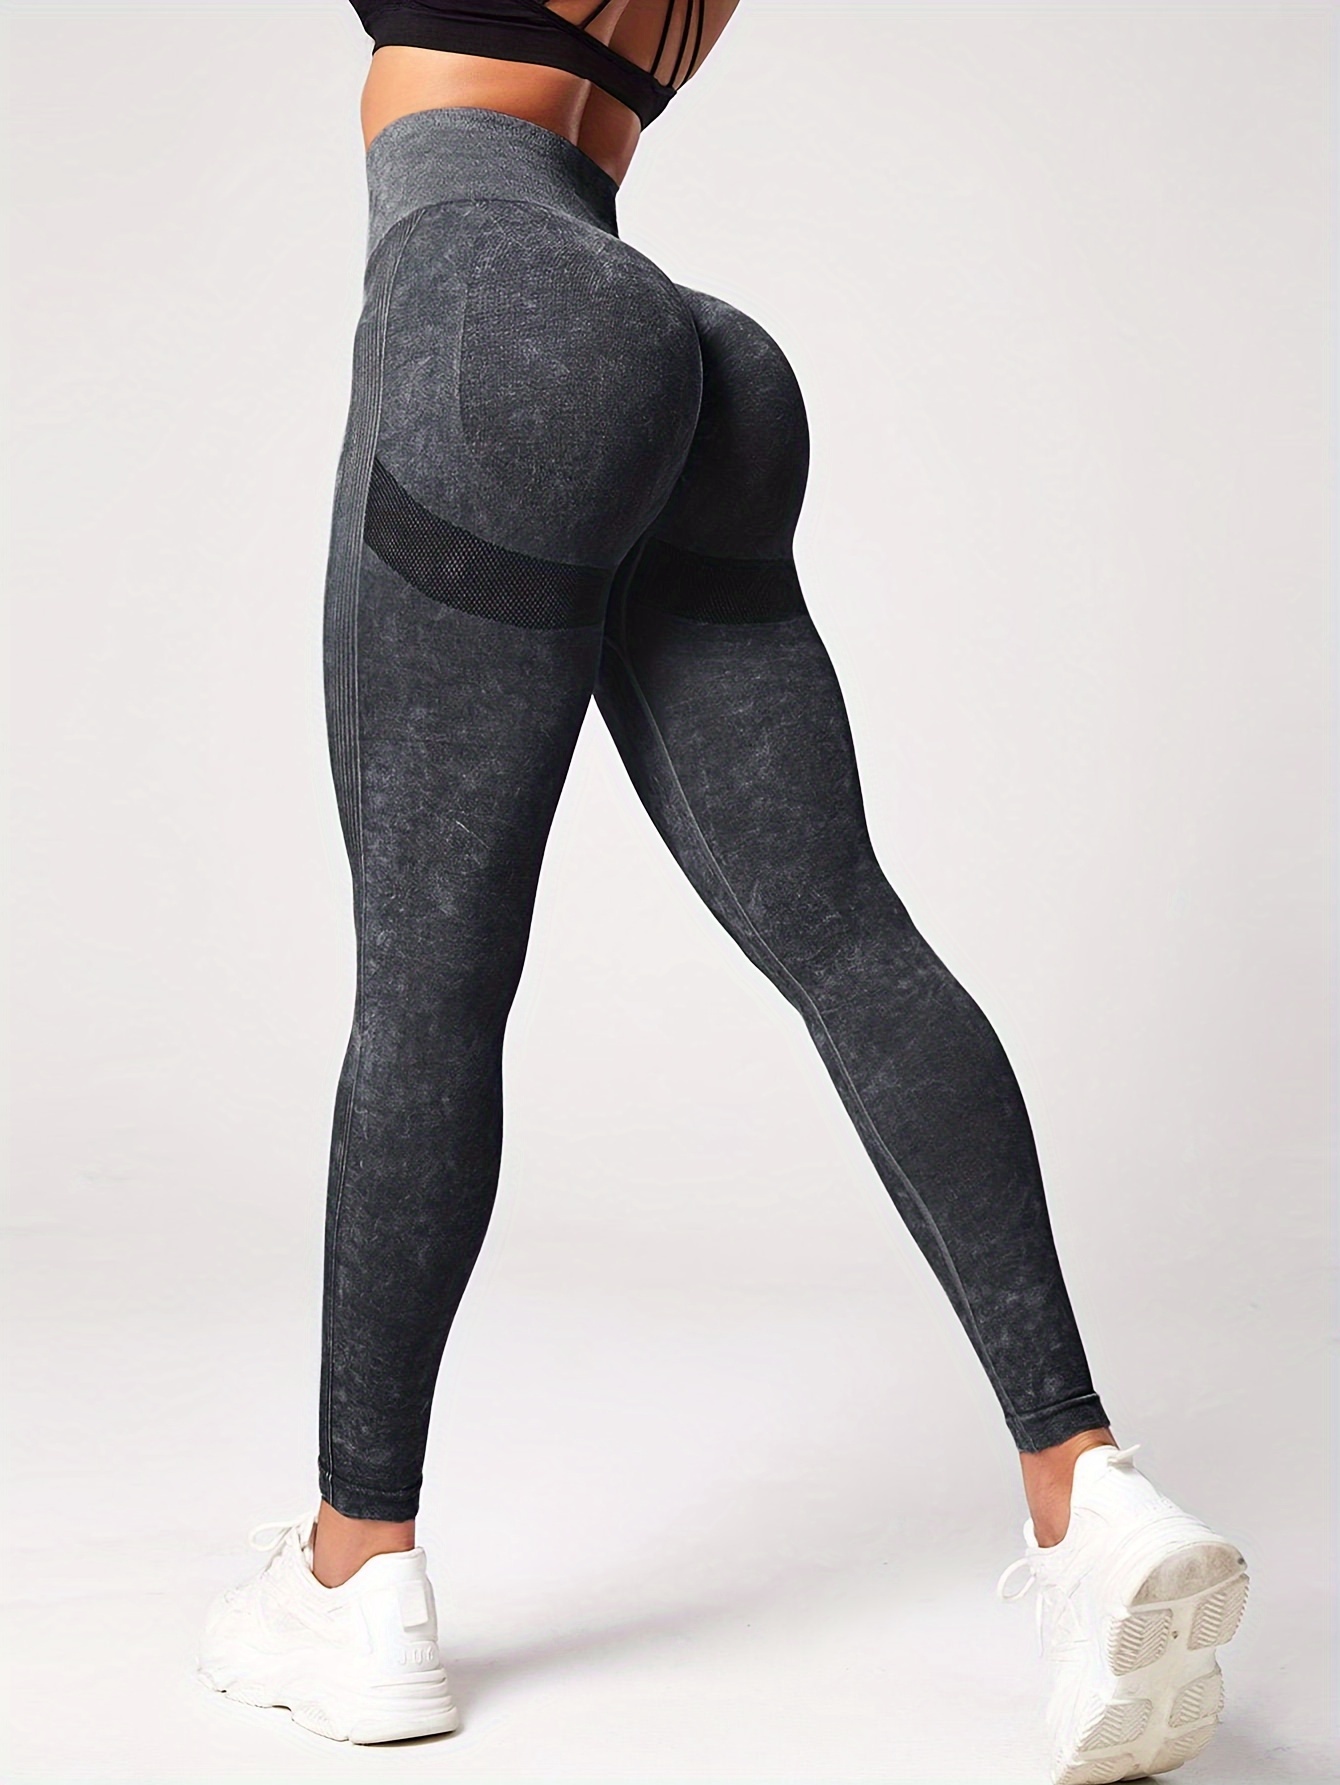 High Waisted Seamless Workout Leggings Women Scrunch Butt - Temu